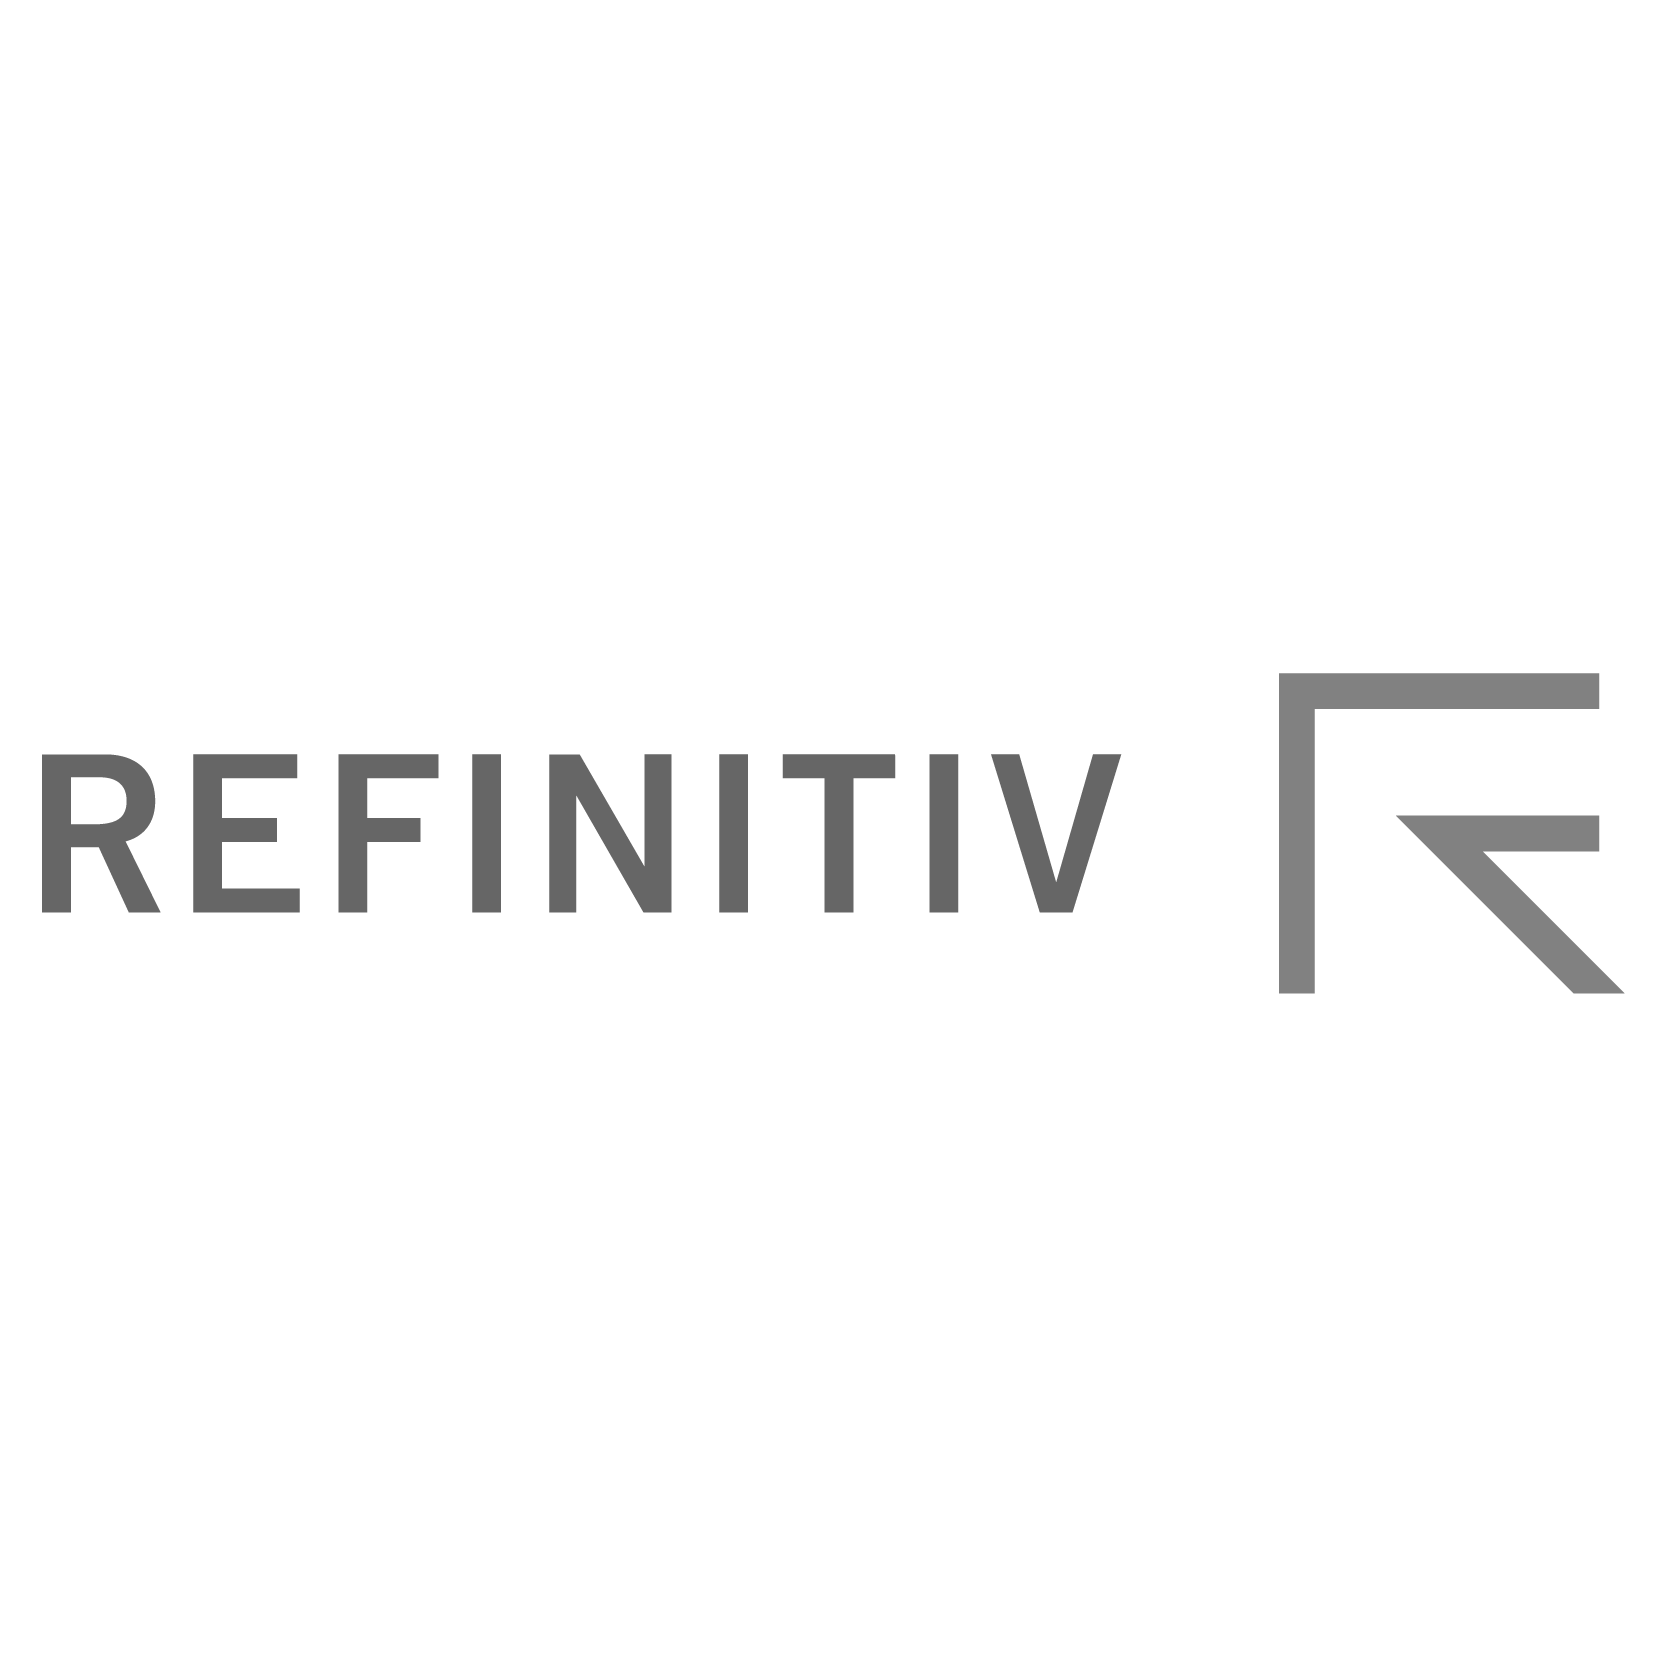 Refinitiv-01